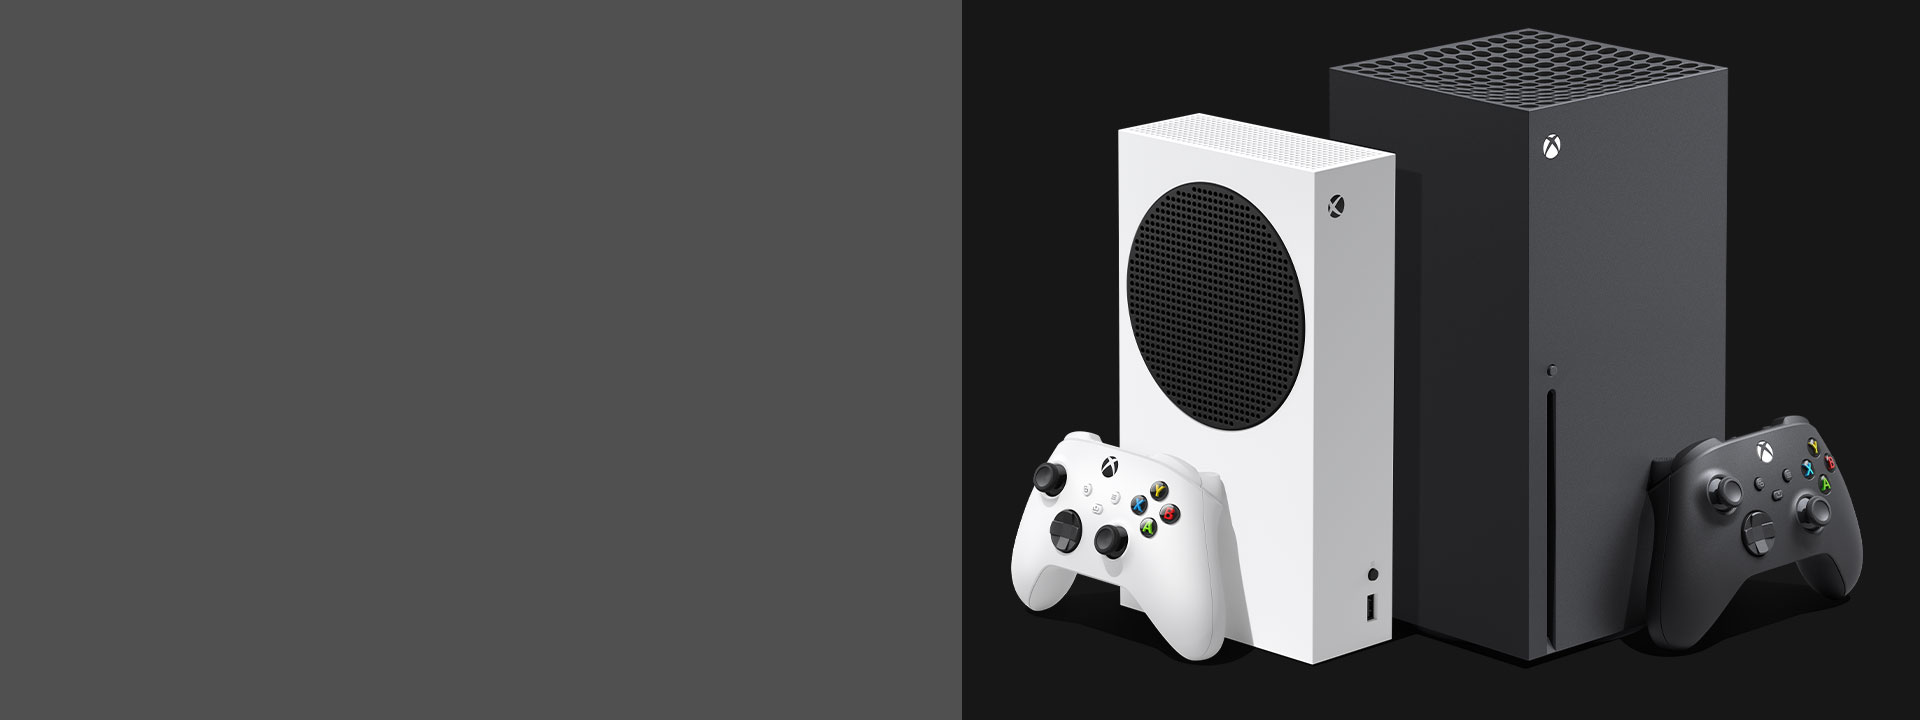 hvile teori Lille bitte Xbox One X | Xbox